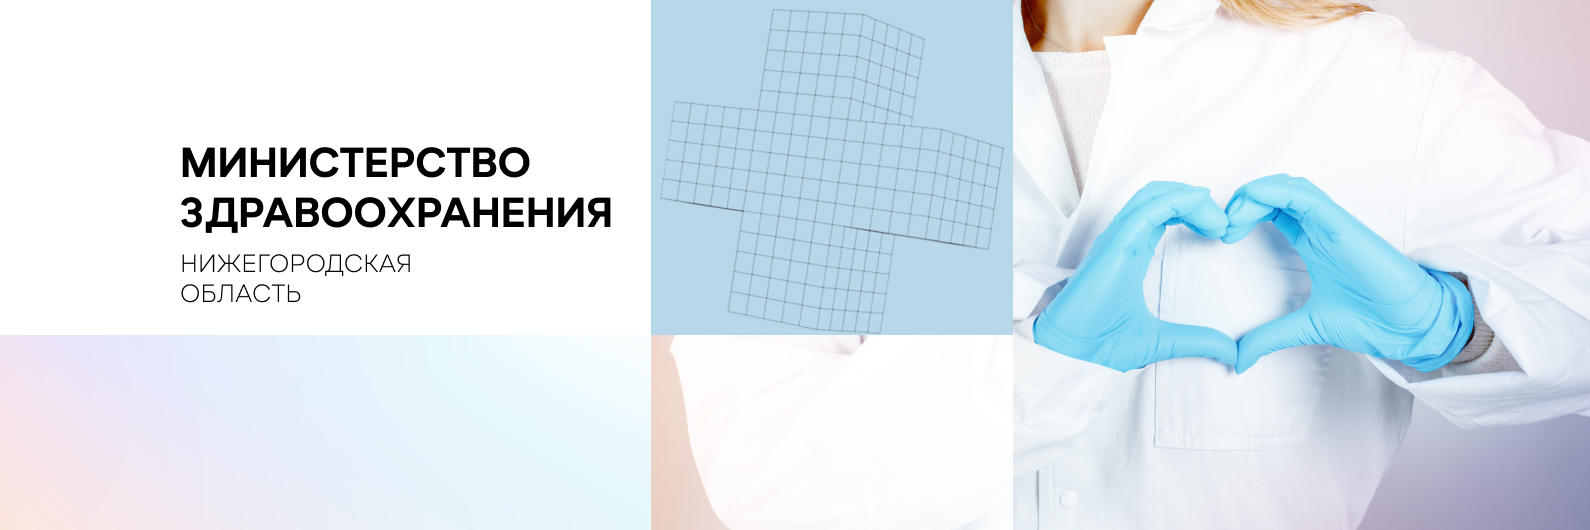 275 единиц оборудования закупят в Нижегородской области в рамках реализации нацпроекта «Здравоохранение»